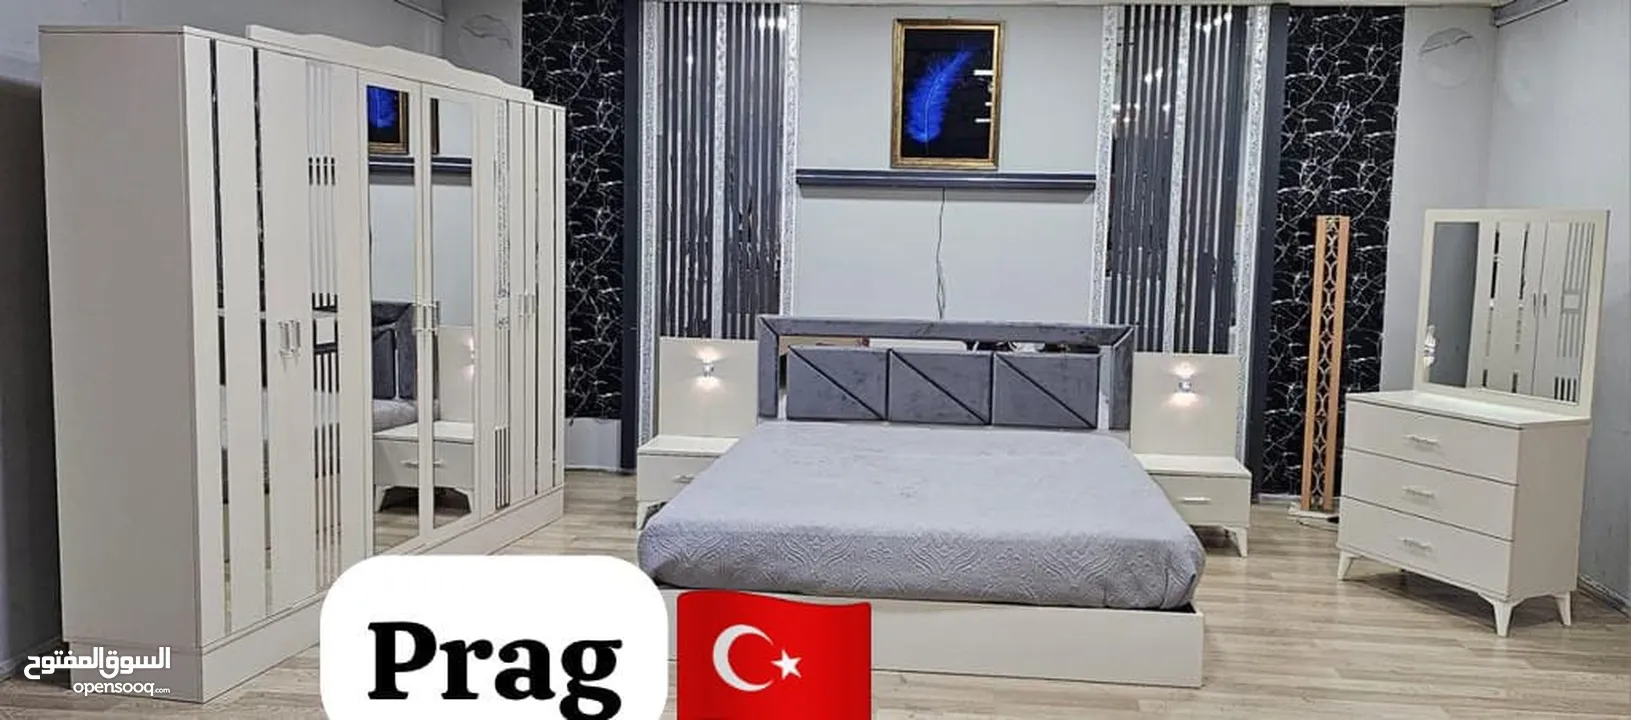 Turki bed room set